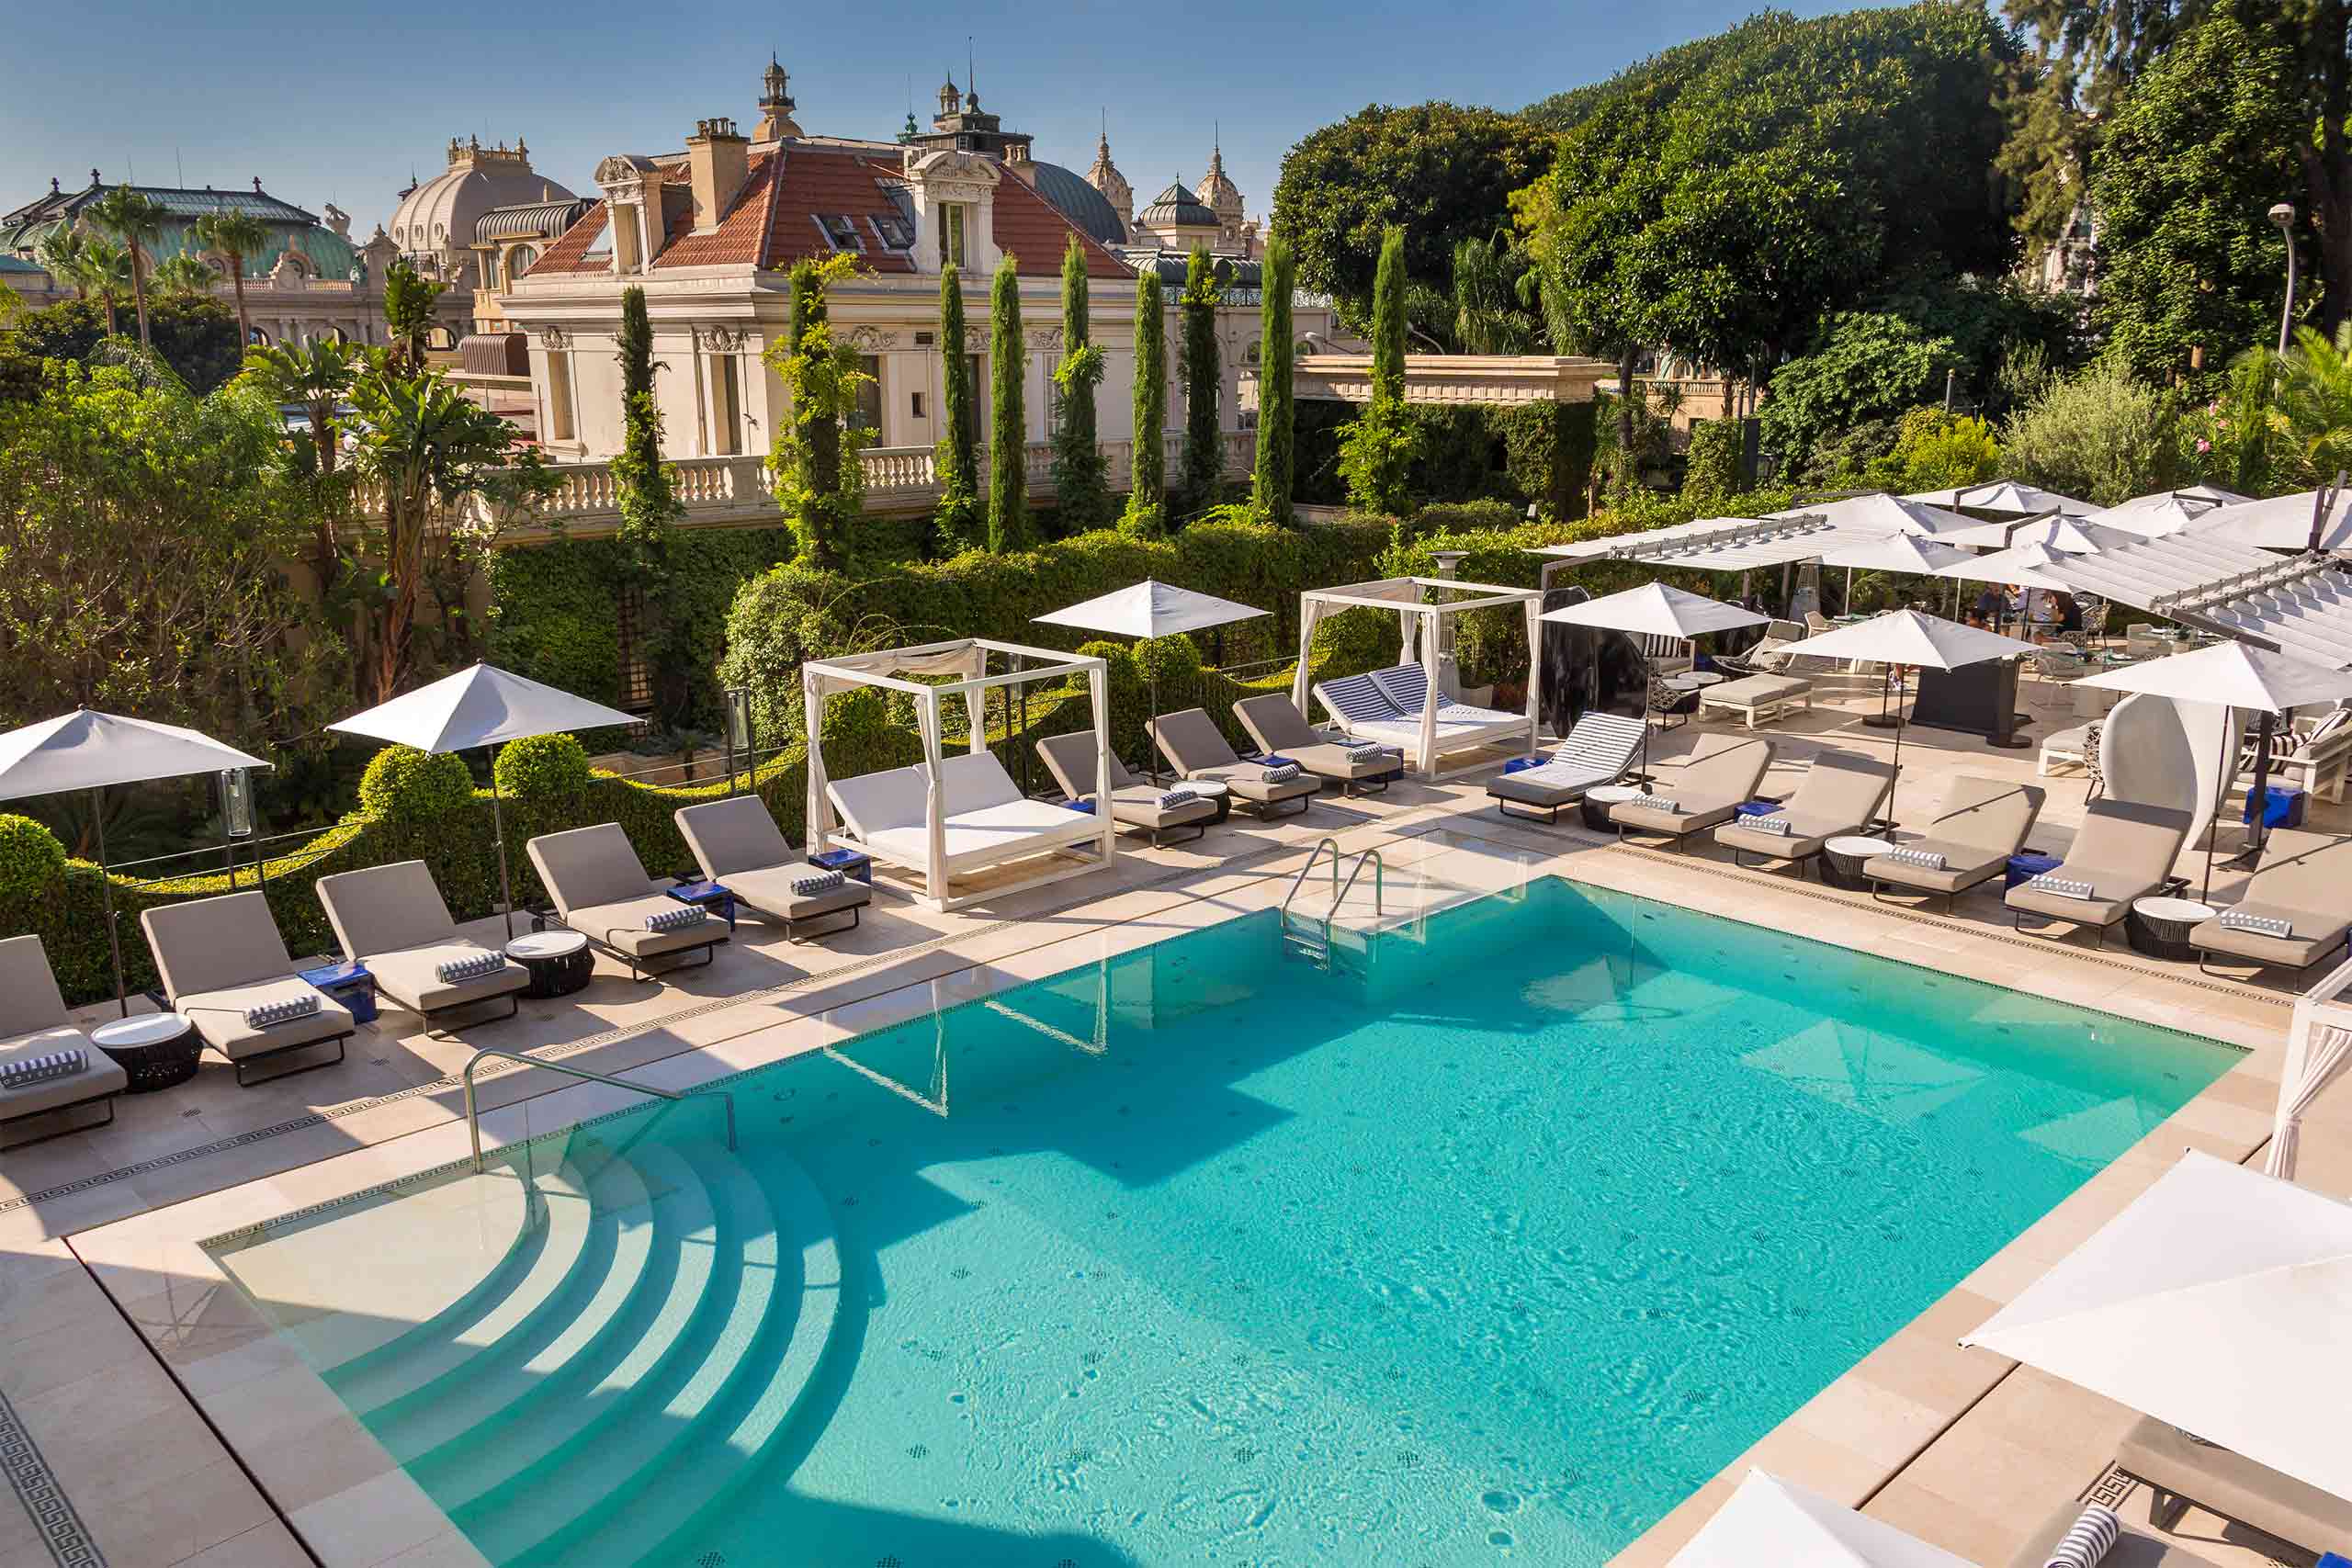 Rooftop pool at the Hotel Metropole Monte-Carlo, Monte Carlo, Monaco